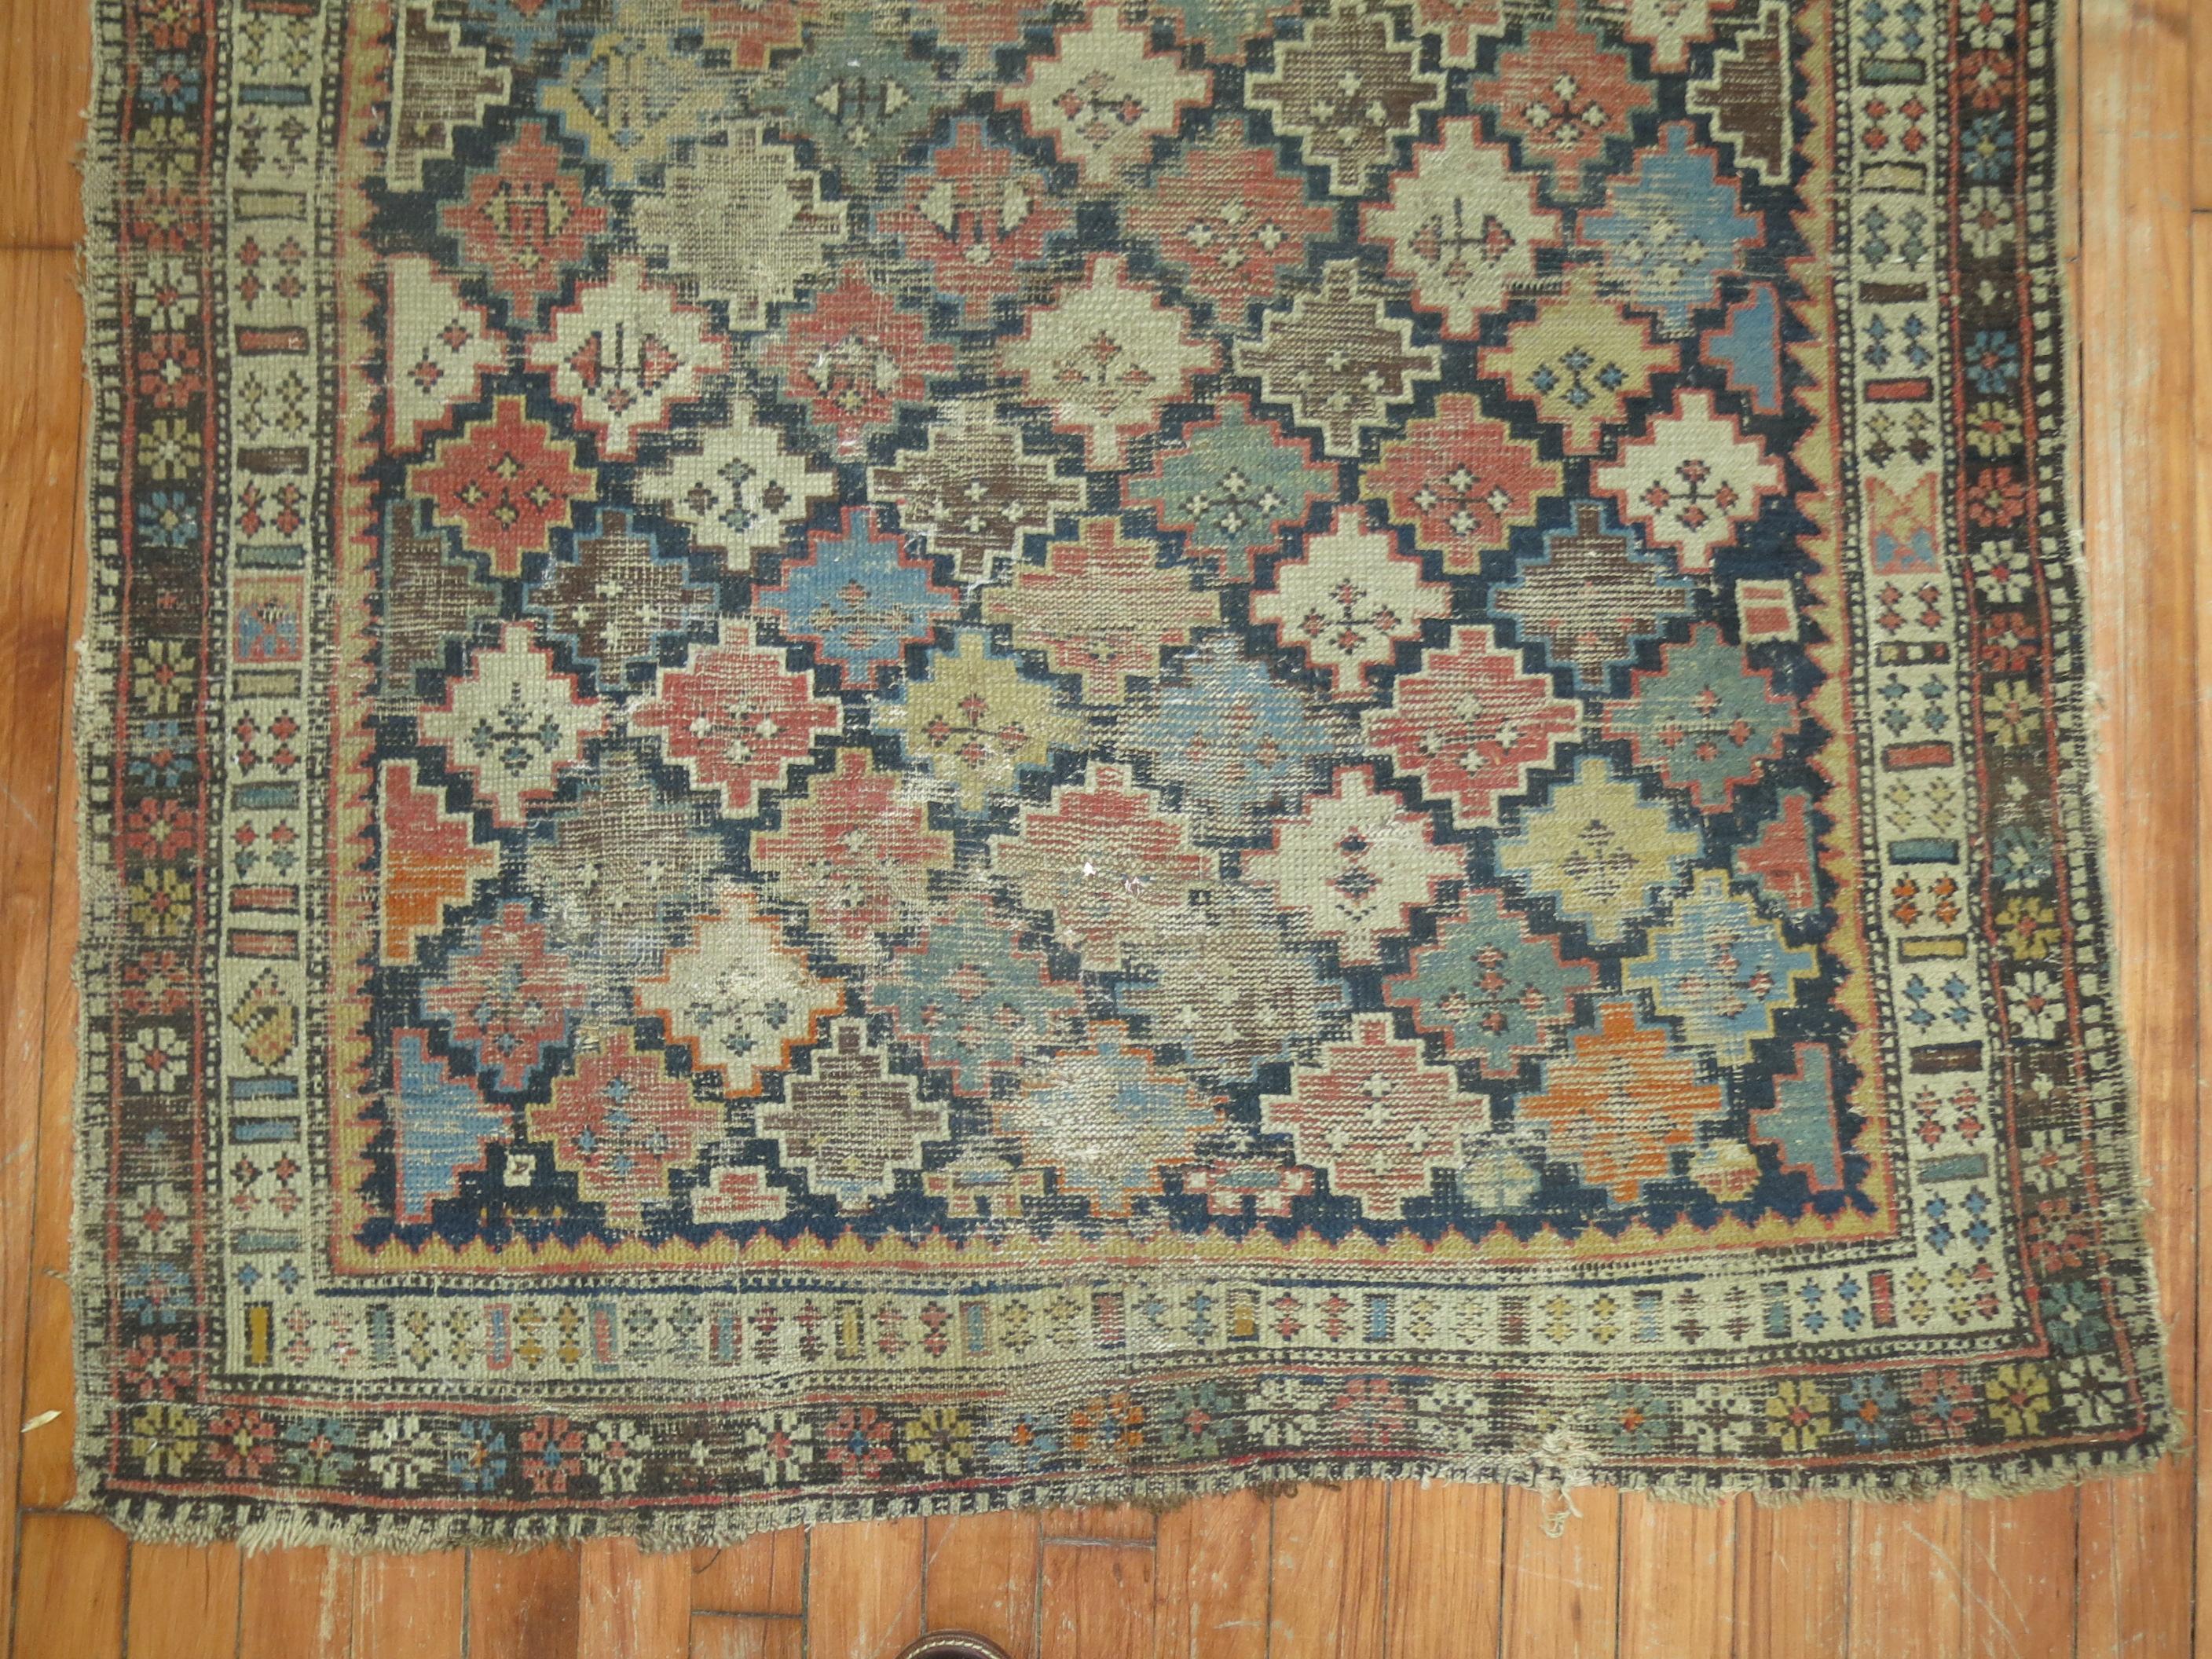 Tapis tribal caucasien usé du 19e siècle.

3'5'' x 4'4''